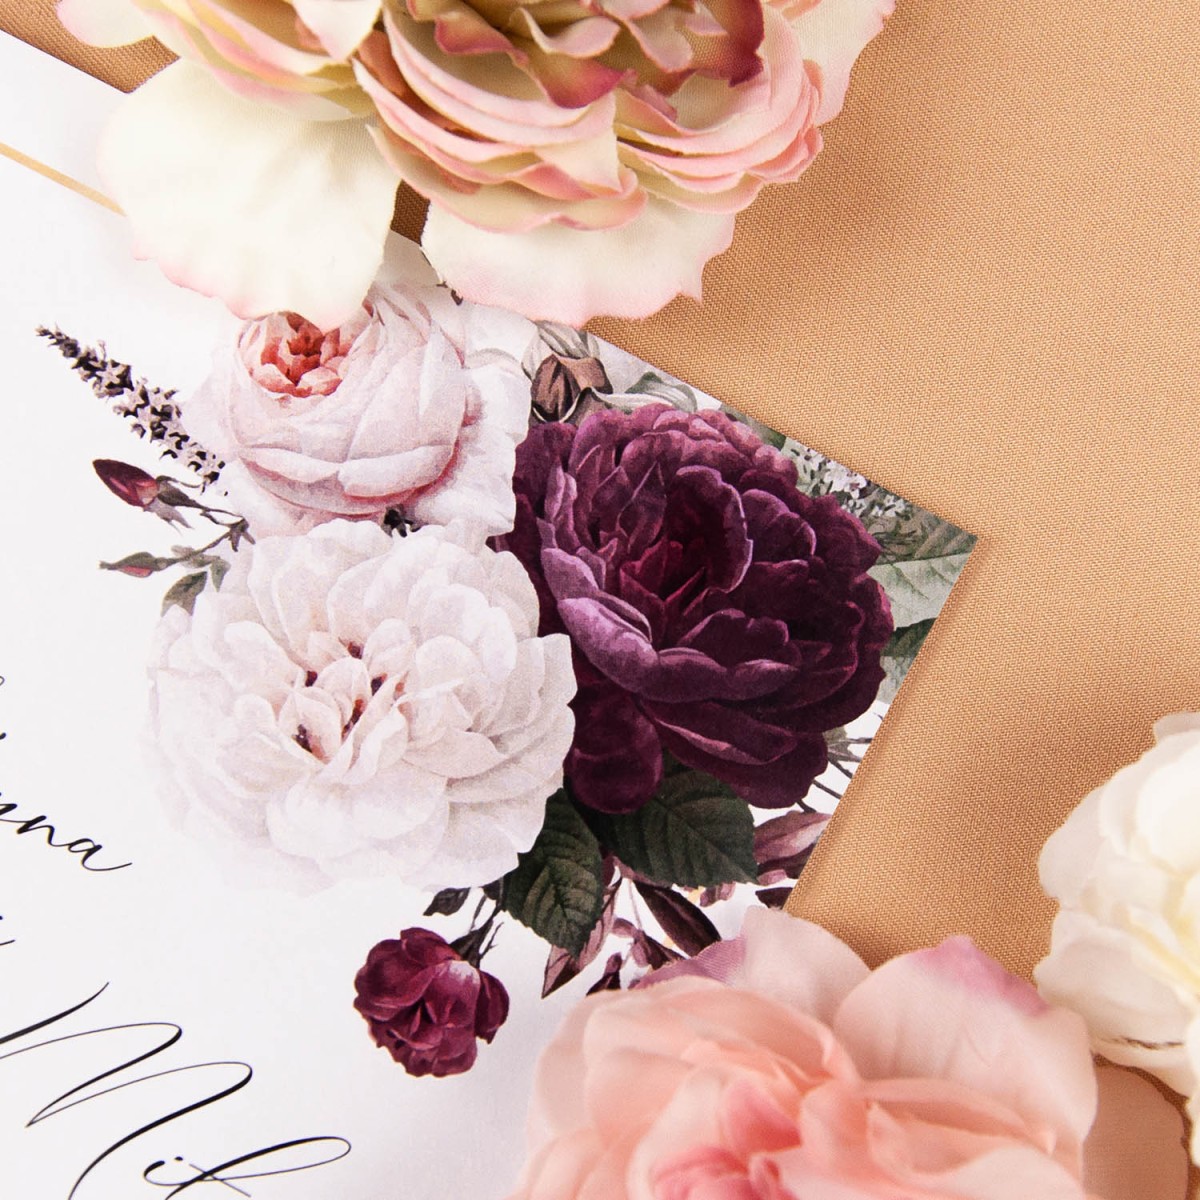 Otwierane zaproszenia na ślub z białymi i bordowymi kwiatami - Rose & White - PRÓBKA